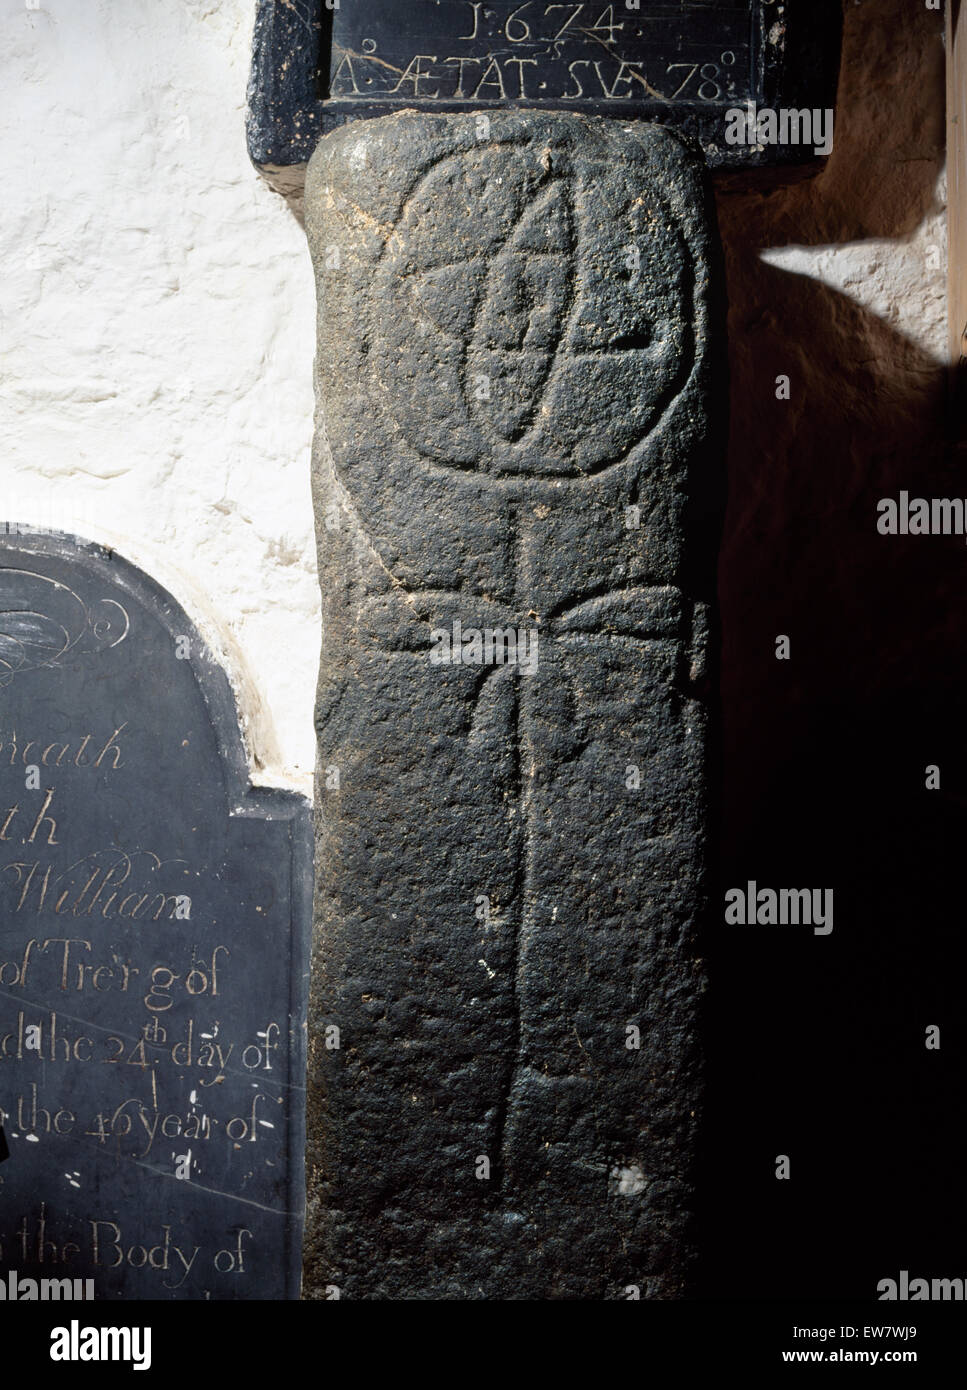 Cross-colonne scolpite nella chiesa Llanbadrig, Anglesey, forse un inizio di grave marker con una ruota-croce al di sopra di un lineare a croce latina. Pesce & palm simboli? Foto Stock